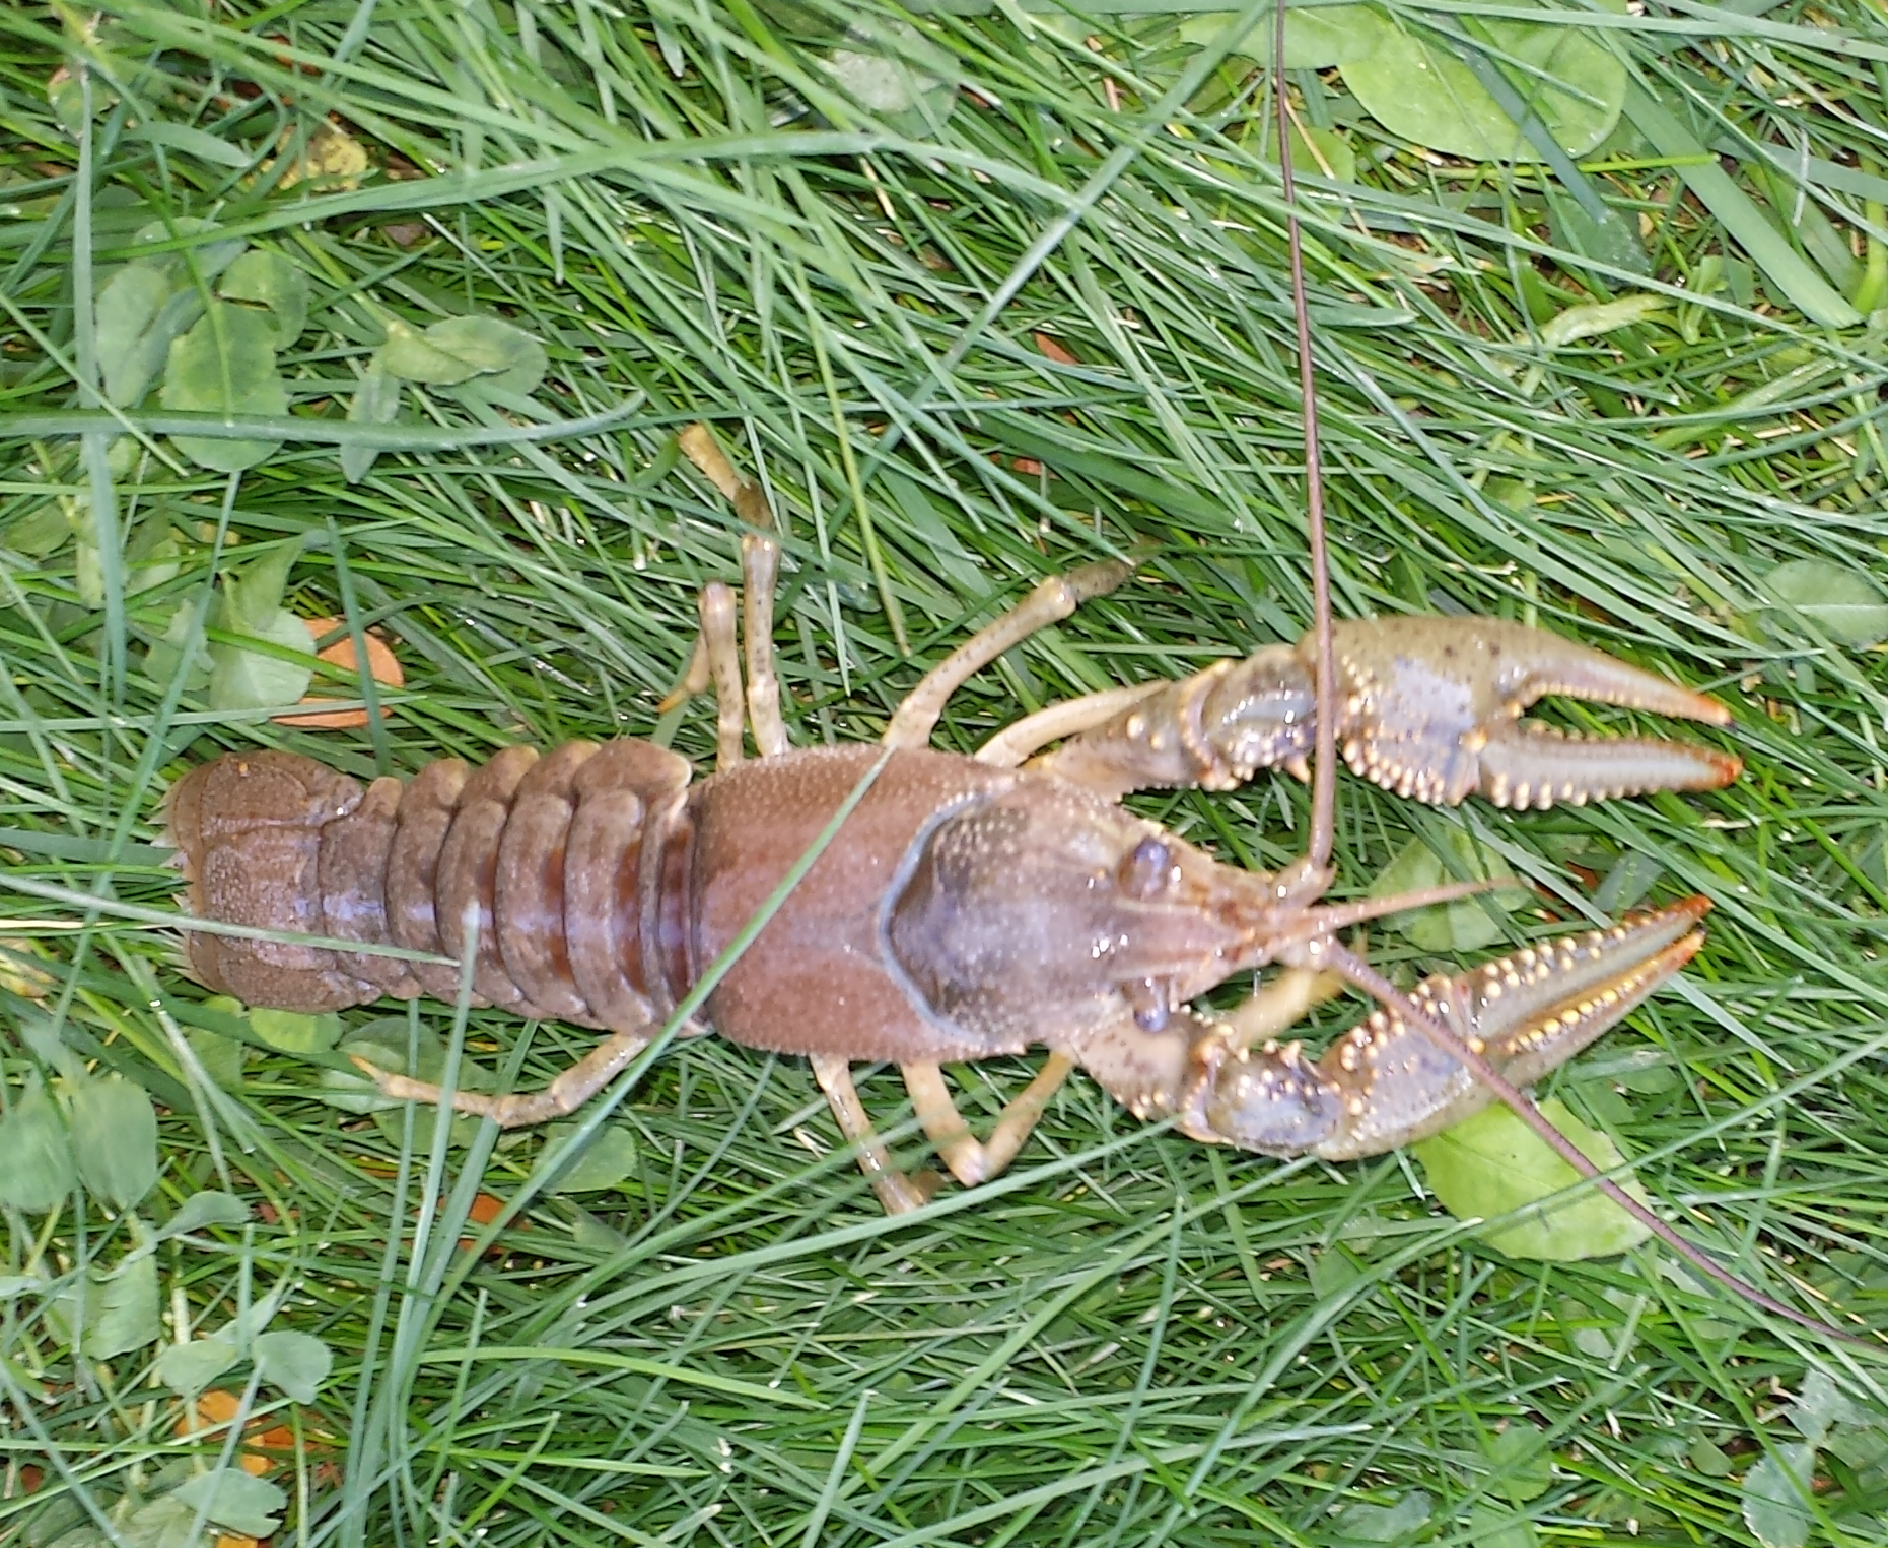 Invasive Crayfish